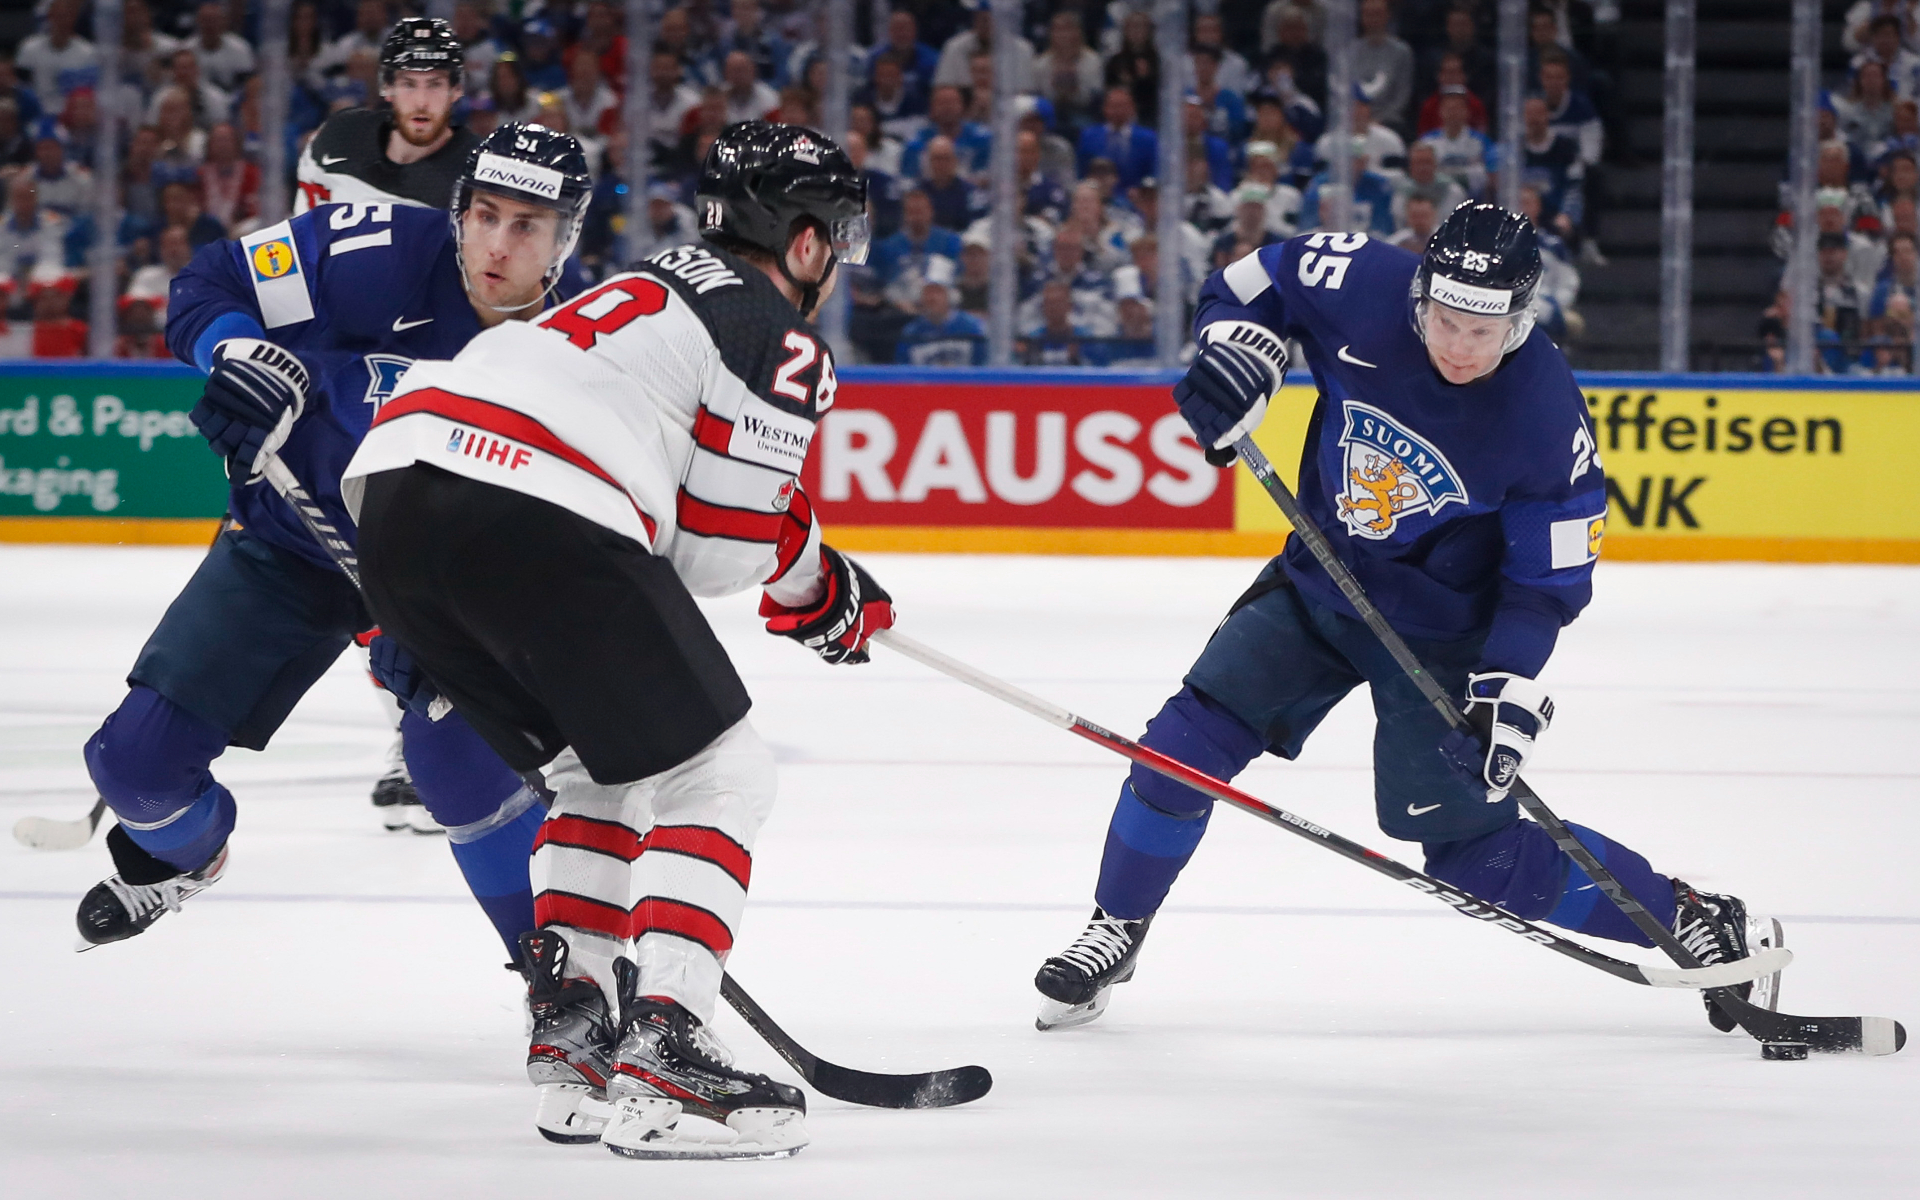 Финляндия победила Канаду и четвертый раз стала чемпионом мира по хоккею